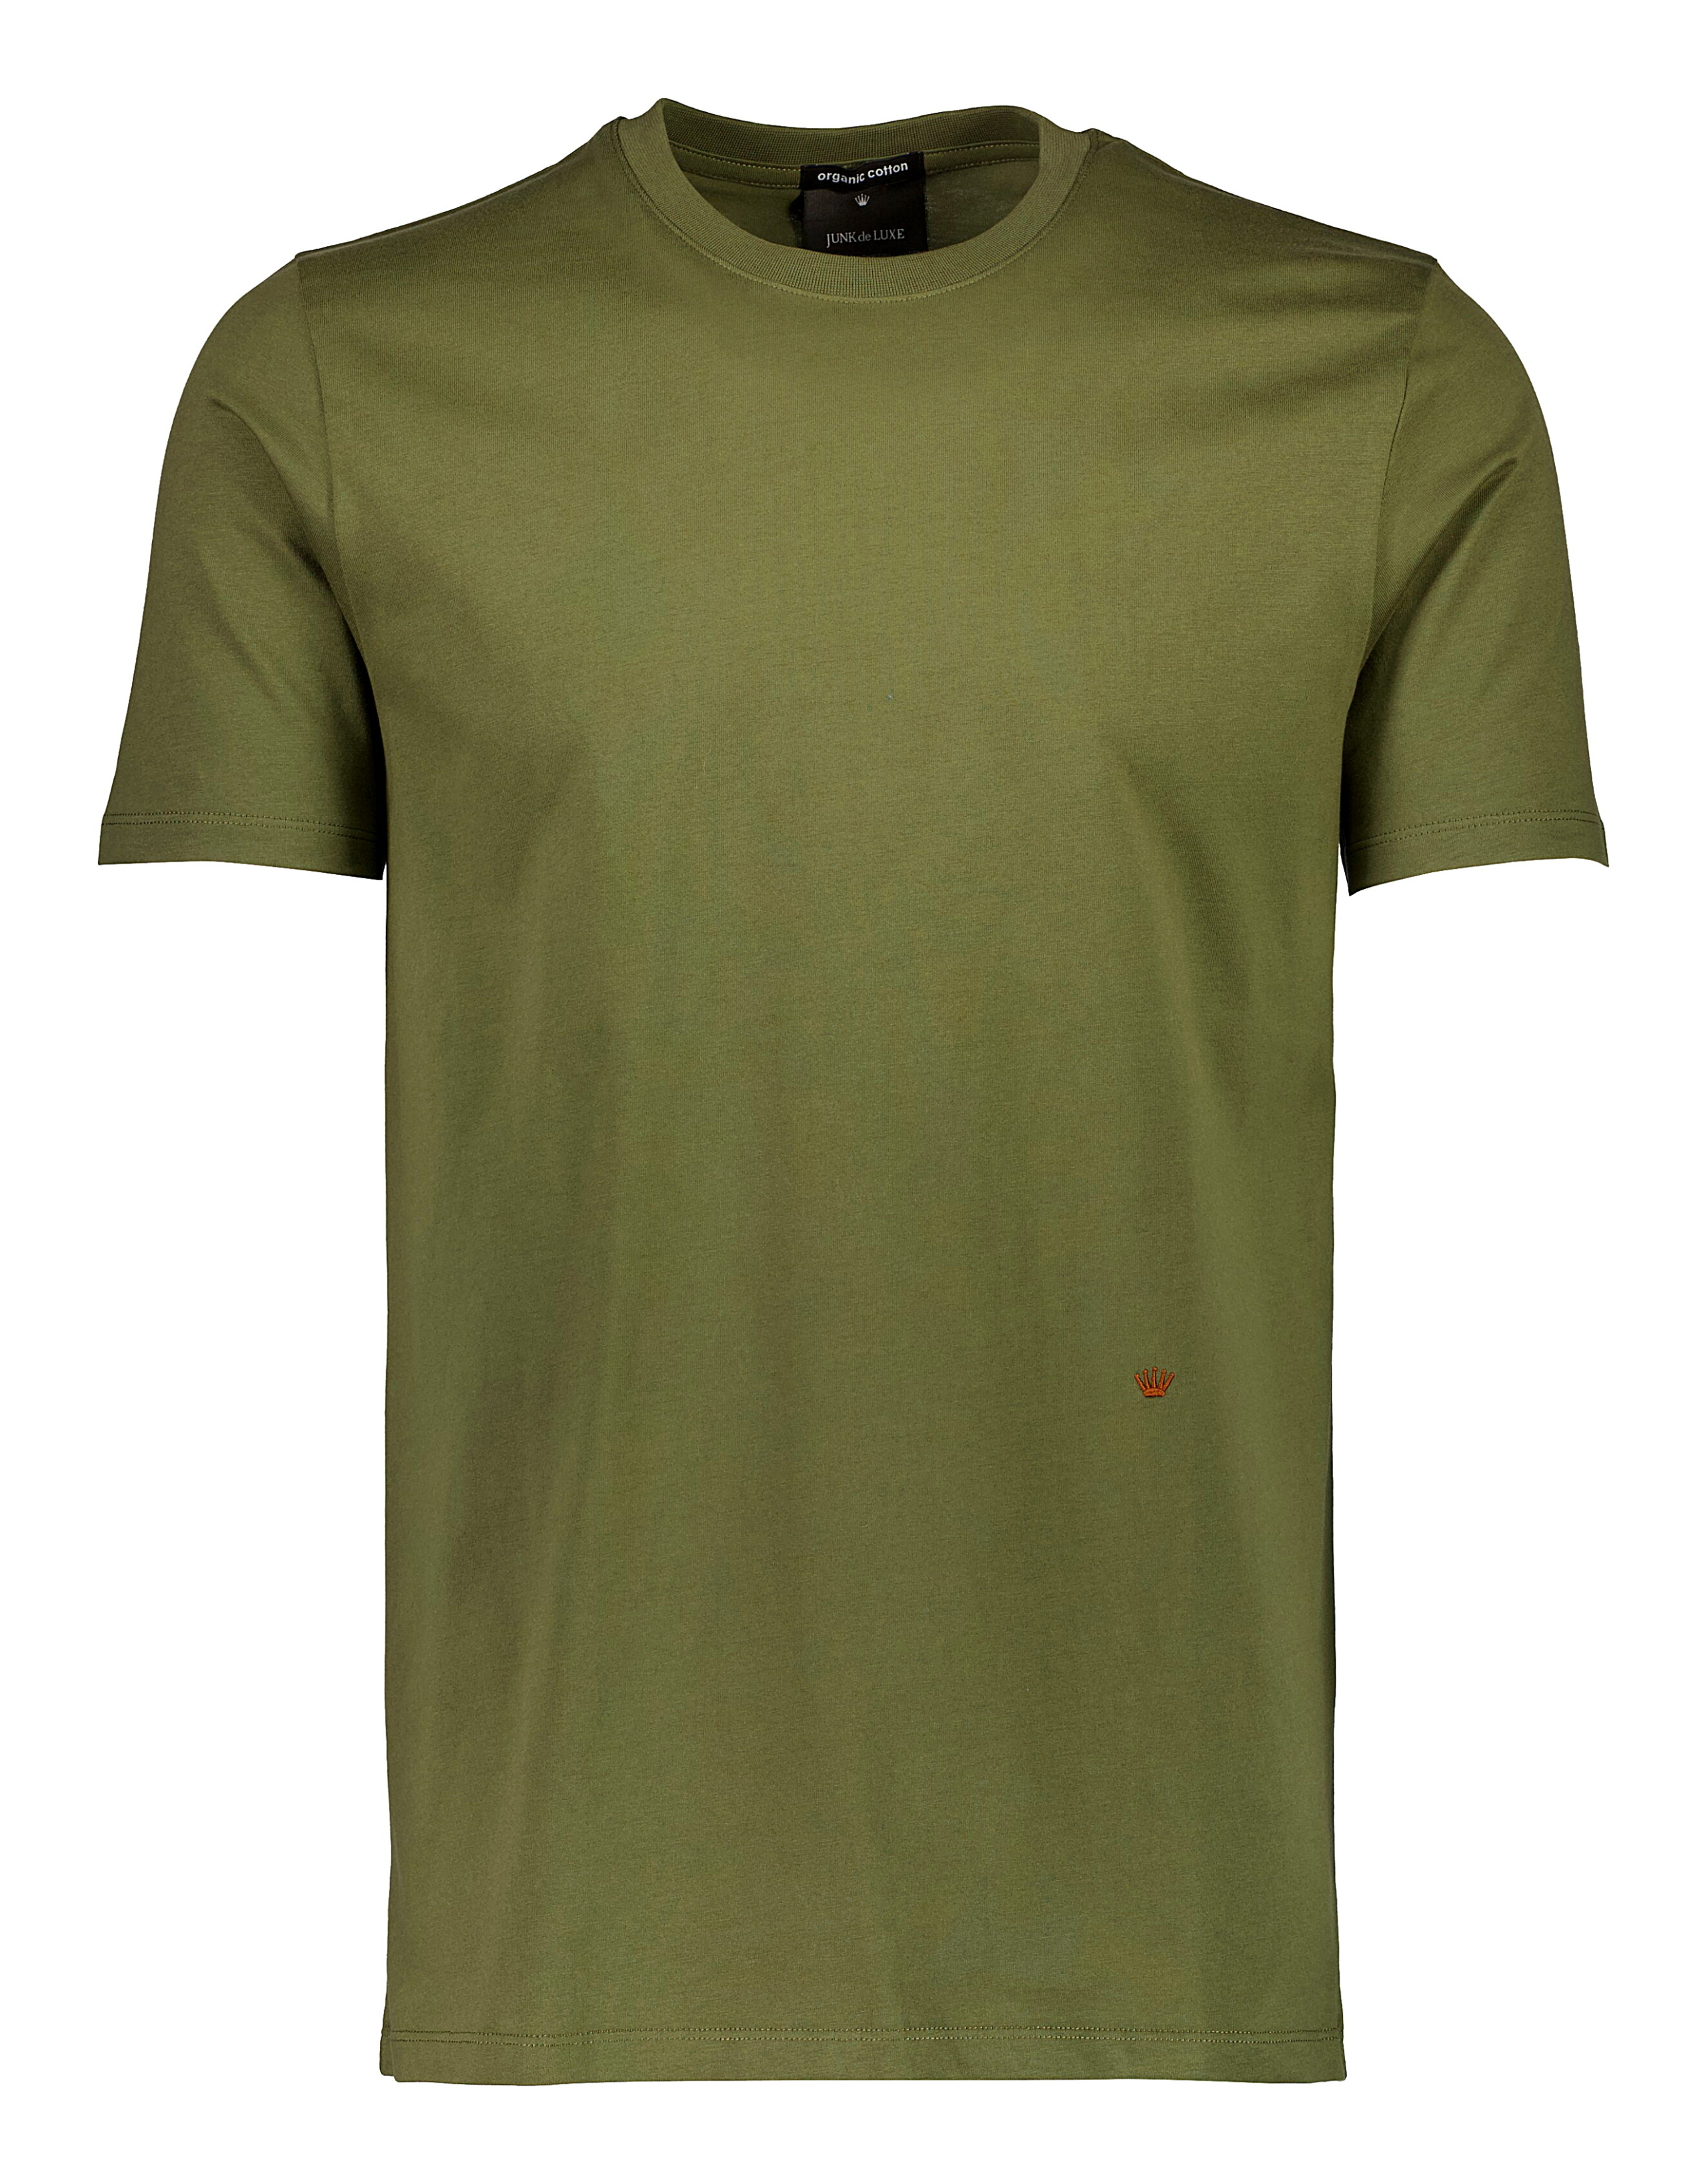 Junk de Luxe T-shirt grön / dk army